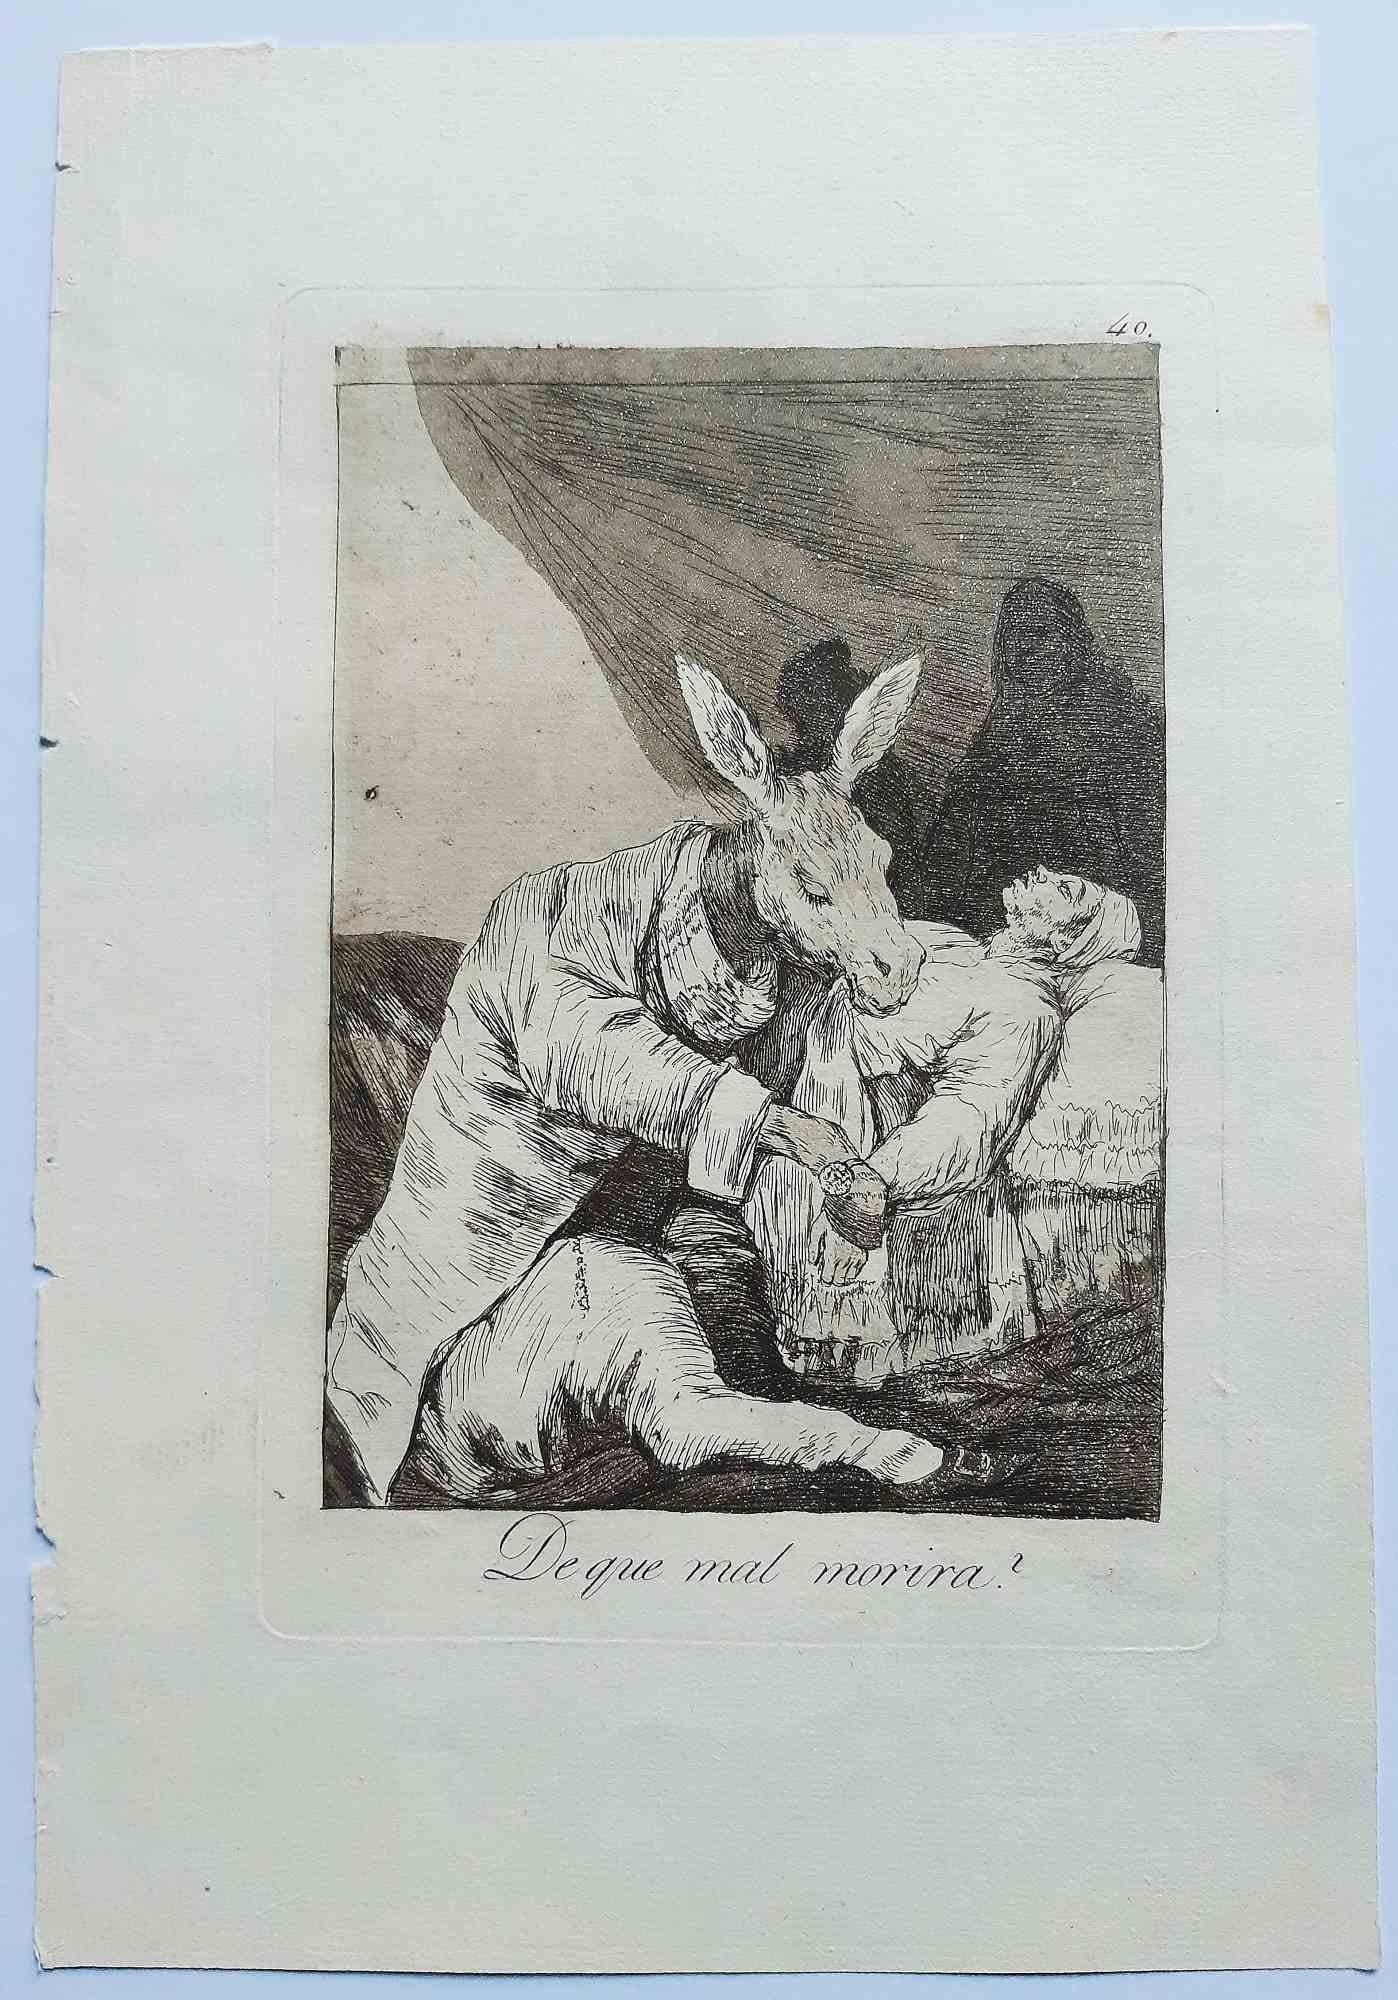 ¿De qué mal morirá? aus der ersten Ausgabe von Los Caprichos ist ein originales Kunstwerk des Künstlers Francisco Goya, das 1799 veröffentlicht wurde.

Radierung und Aquatinta auf Papier.

Die Radierung ist Teil der Erstausgabe von "Los Caprichos",